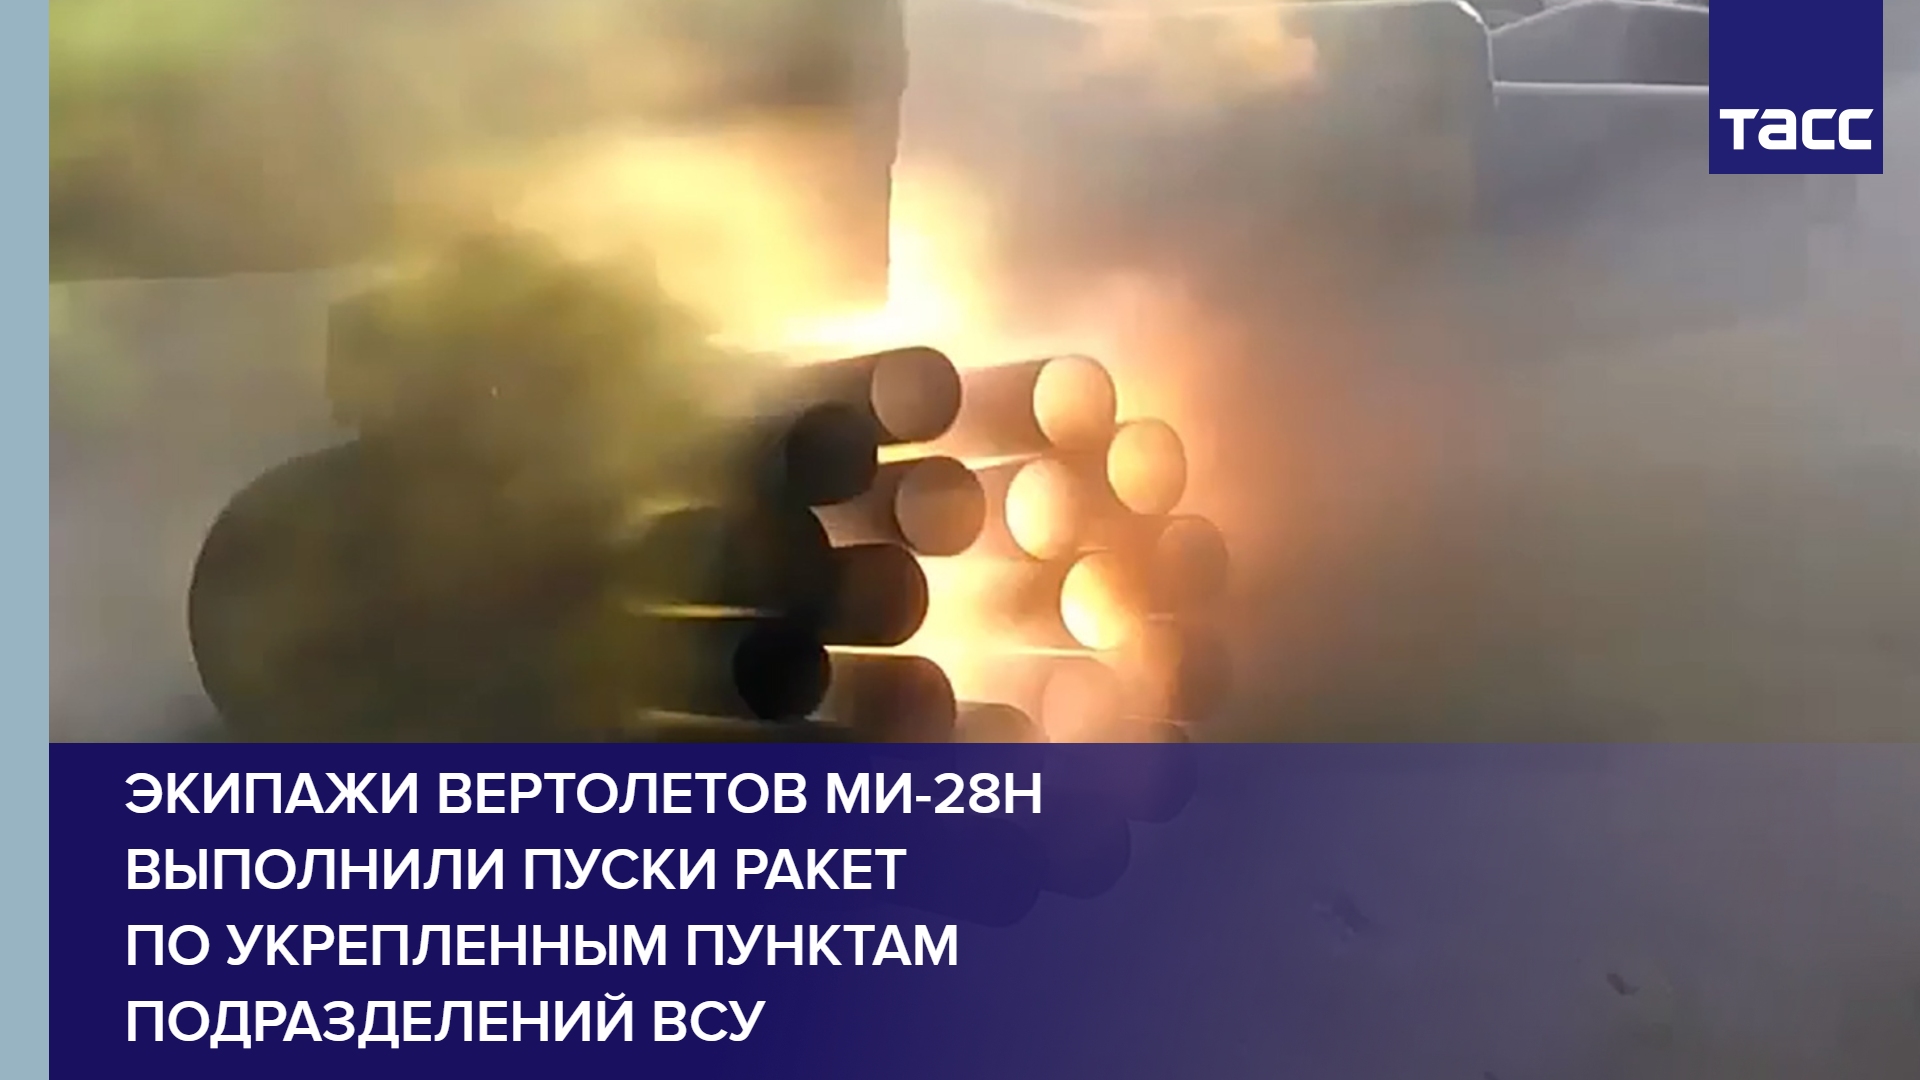 Экипажи вертолетов Ми-28Н выполнили пуски ракет по укрепленным пунктам подразделений ВСУ #shorts